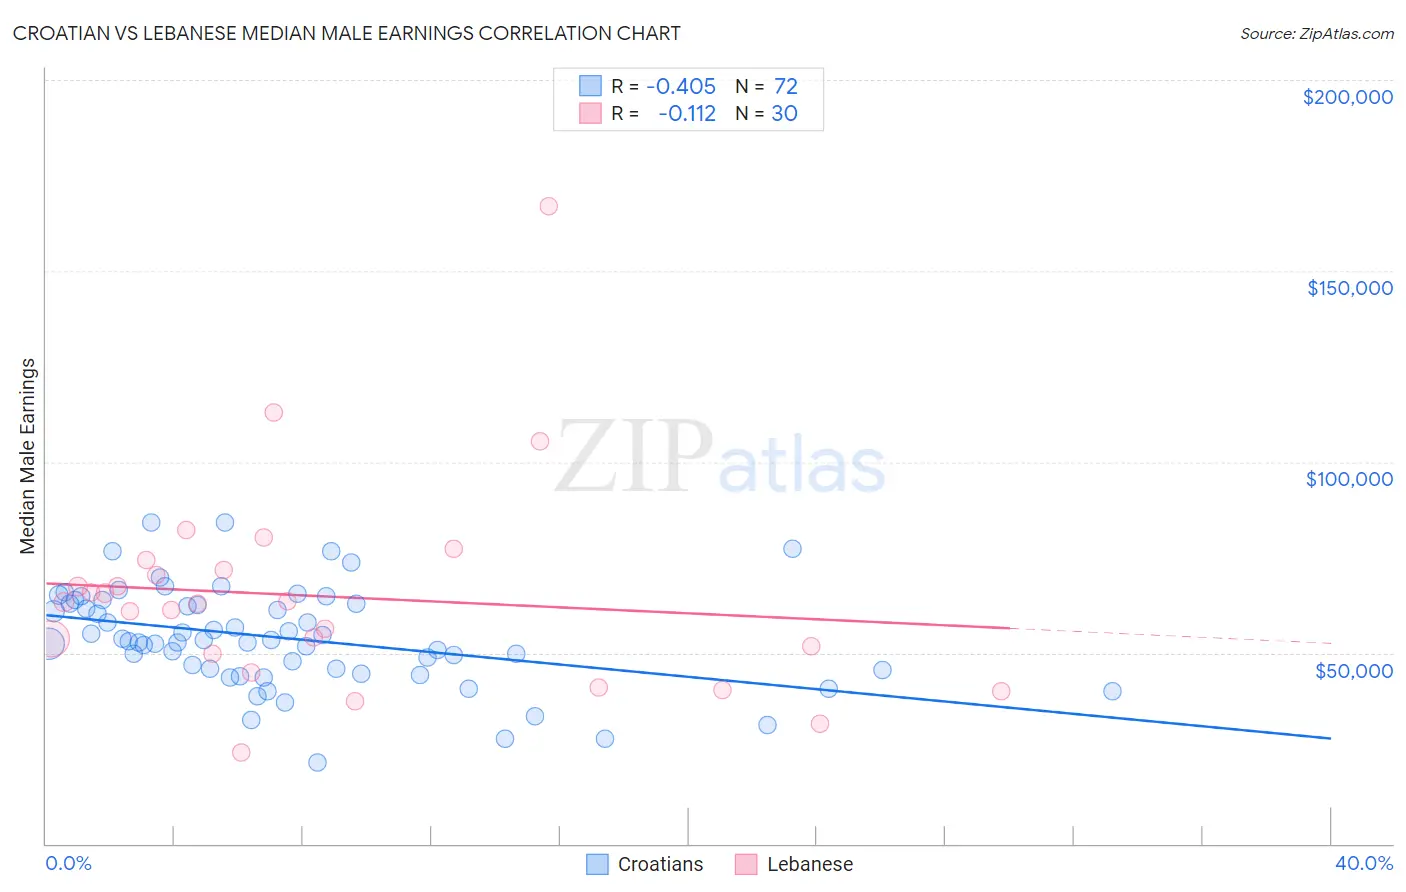 Croatian vs Lebanese Median Male Earnings